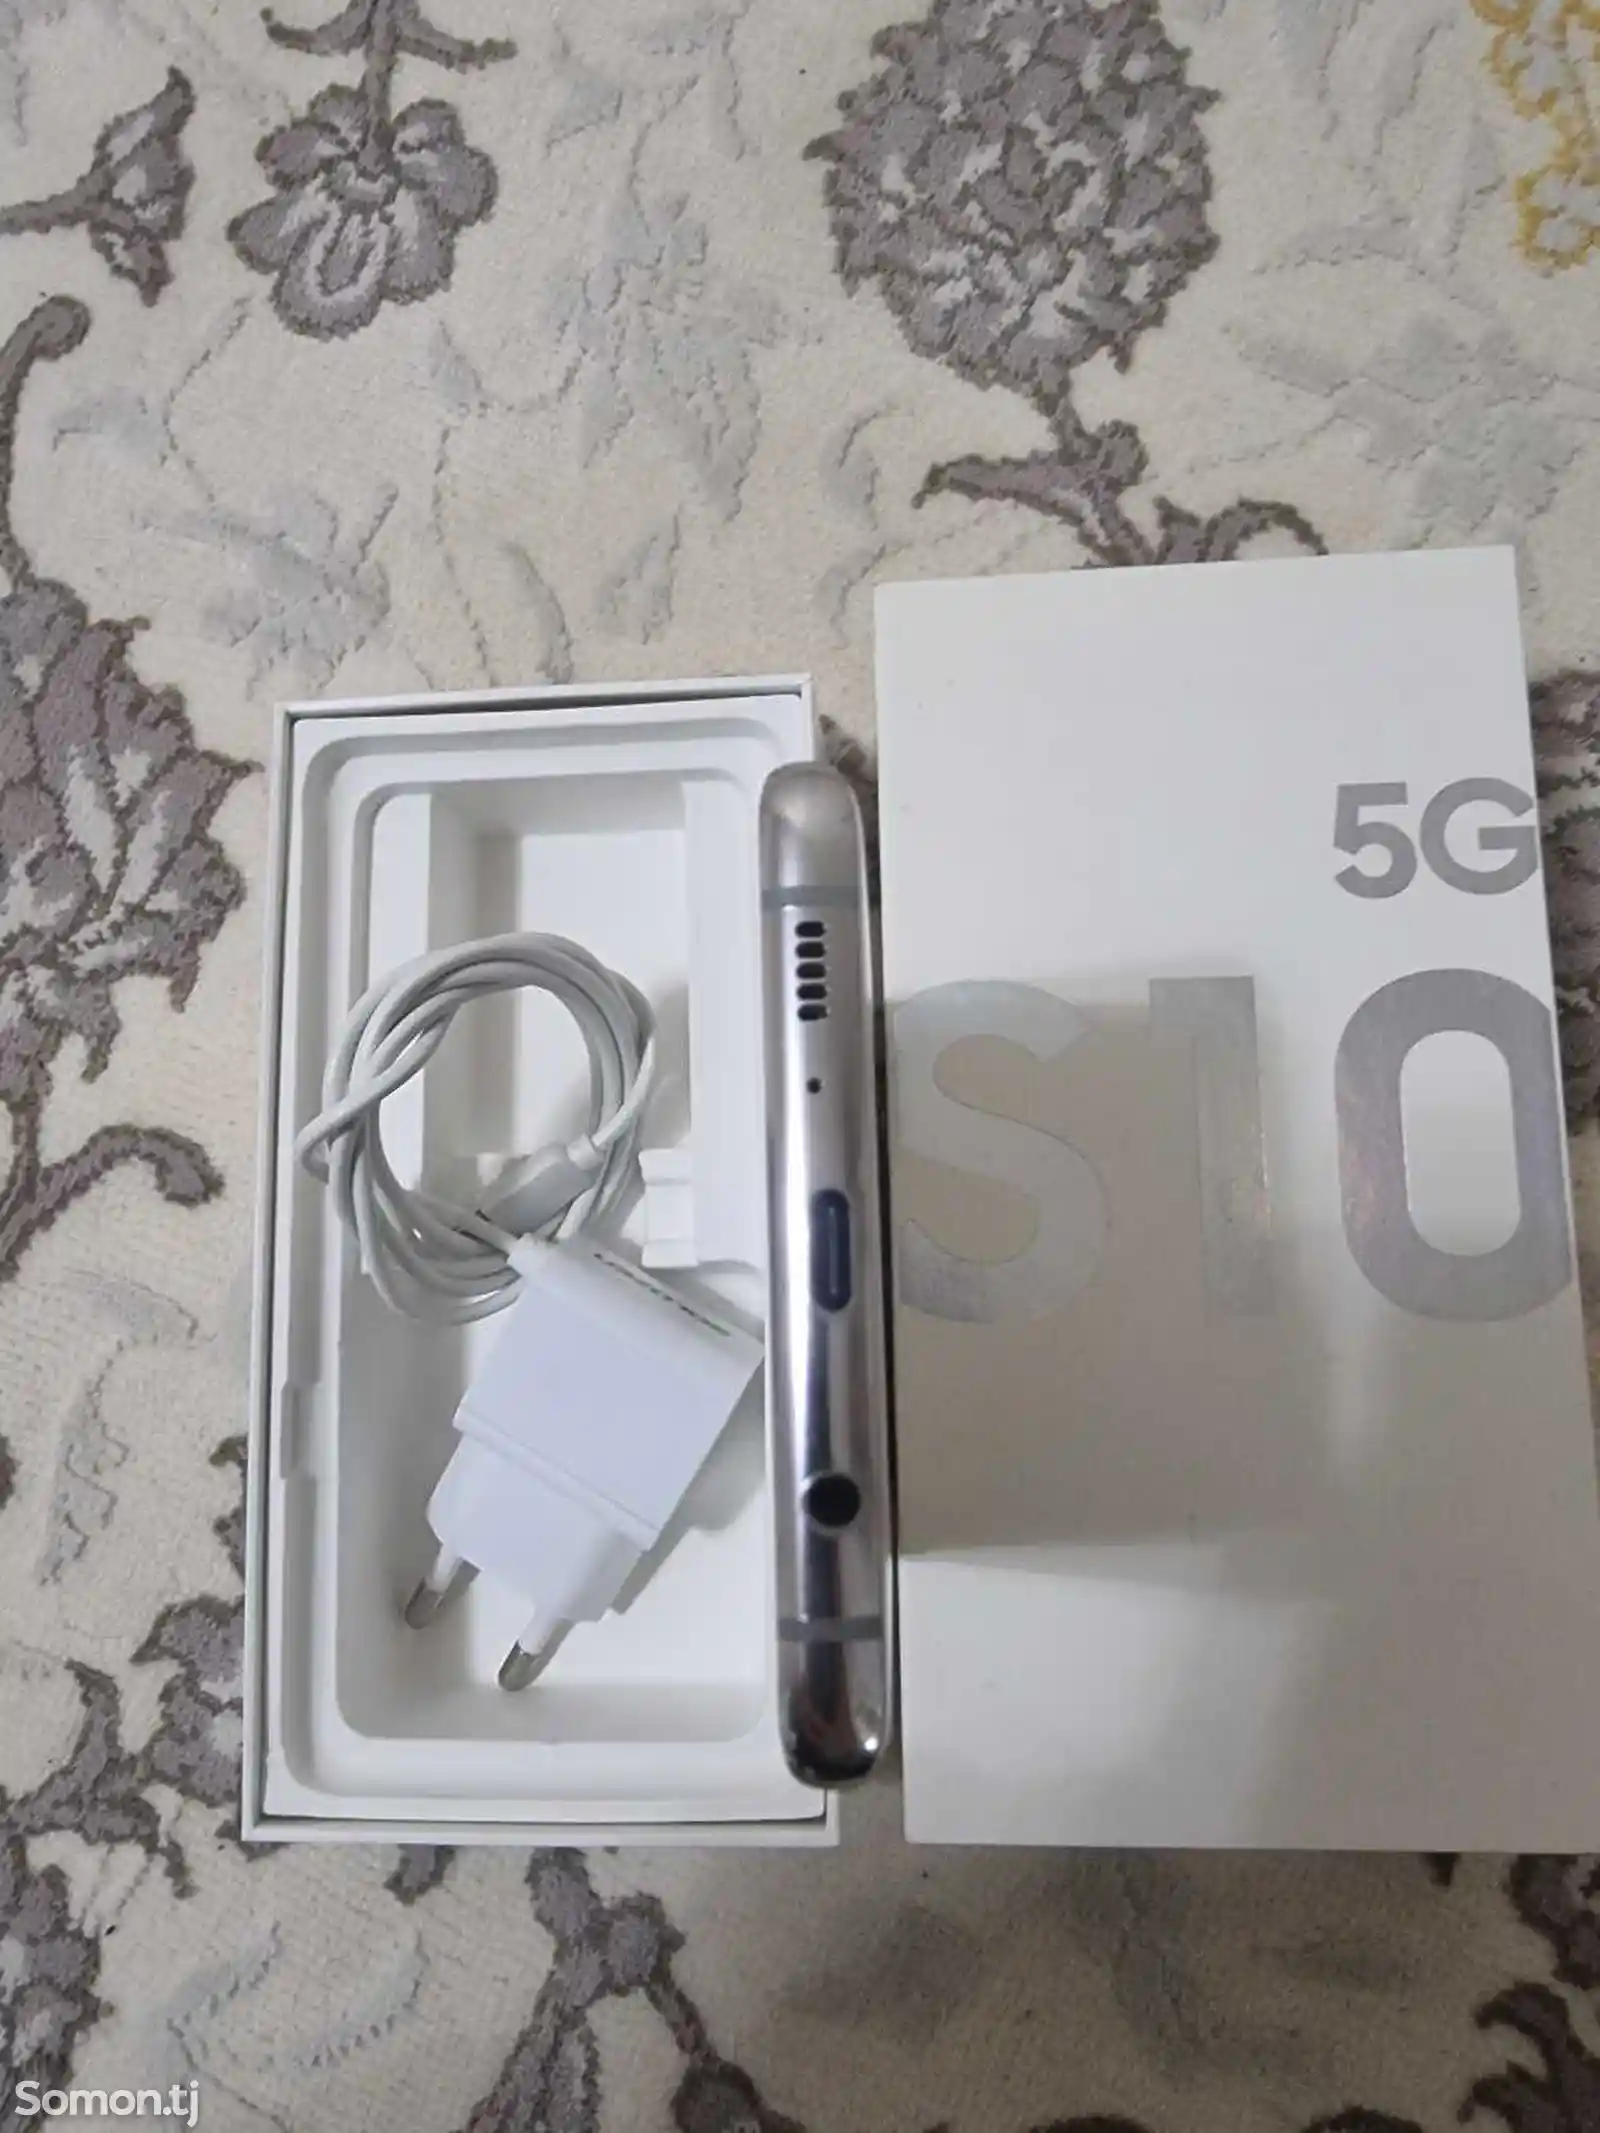 Samsung Galaxy S10 5g-3